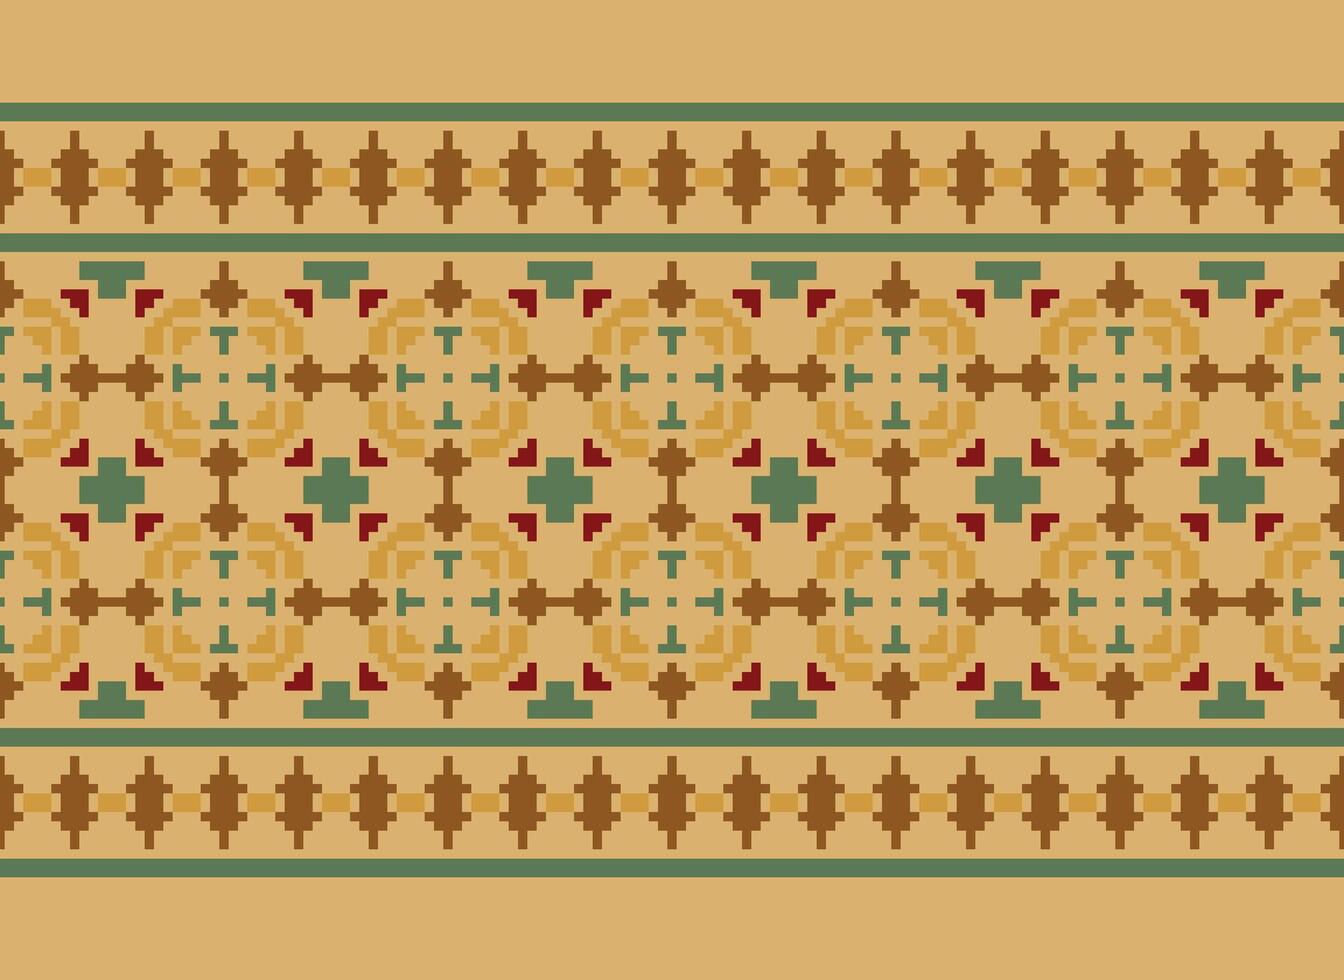 pixel jaargangen kruis steek traditioneel etnisch patroon paisley bloem ikat achtergrond abstract aztec Afrikaanse Indonesisch Indisch naadloos patroon voor kleding stof afdrukken kleding jurk tapijt gordijnen en sarong vector